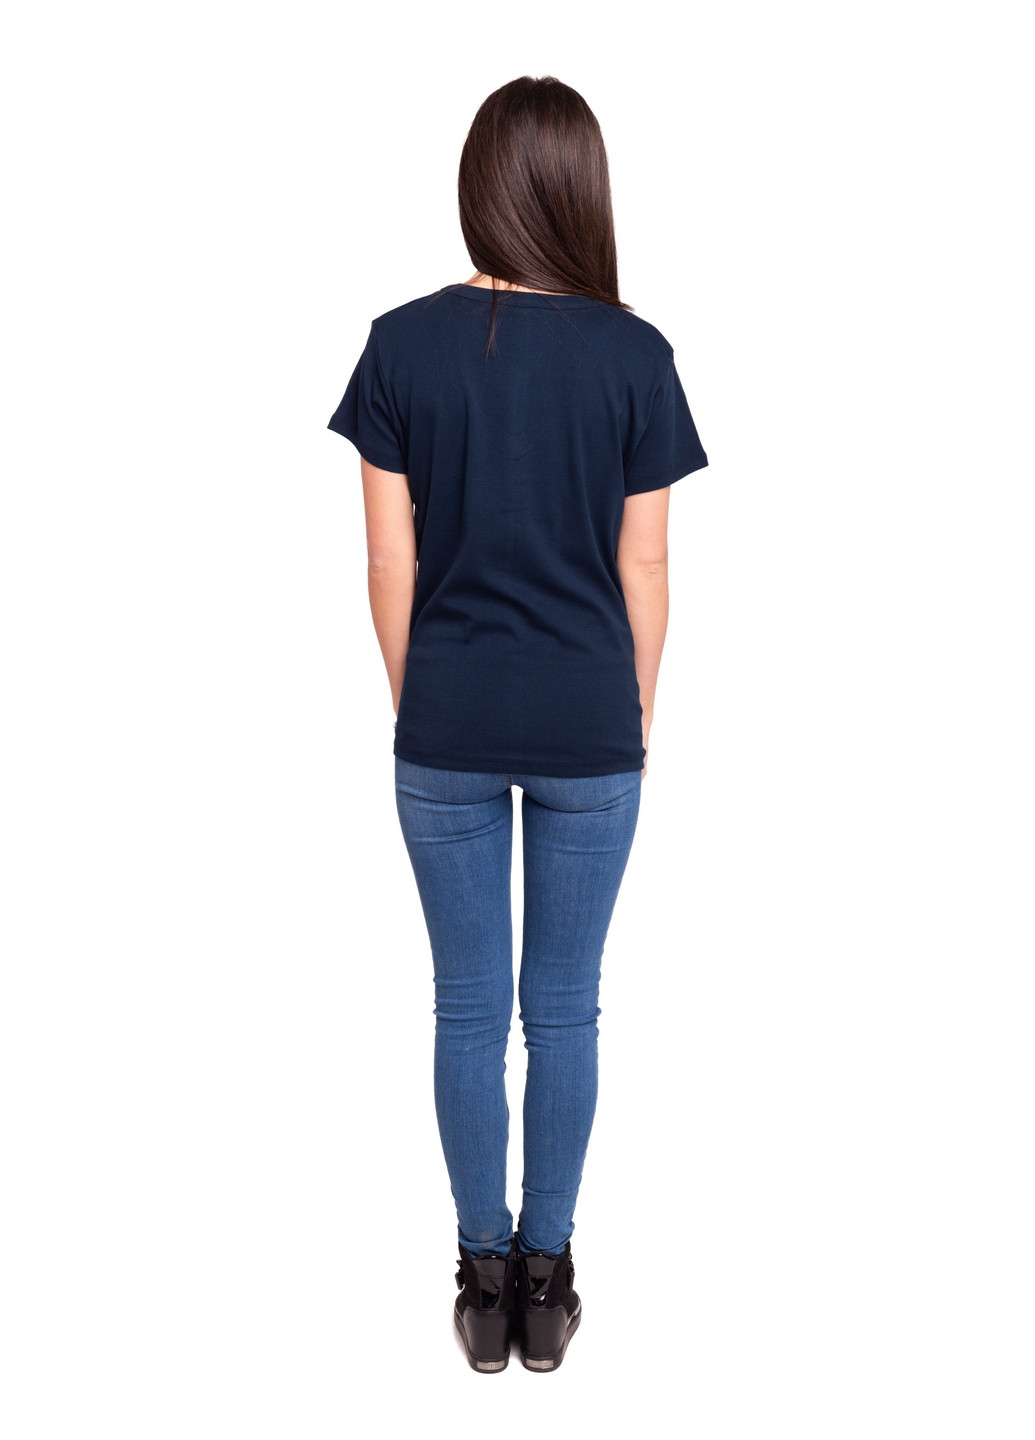 Темно-синяя всесезон футболка женская Наталюкс 21-2369